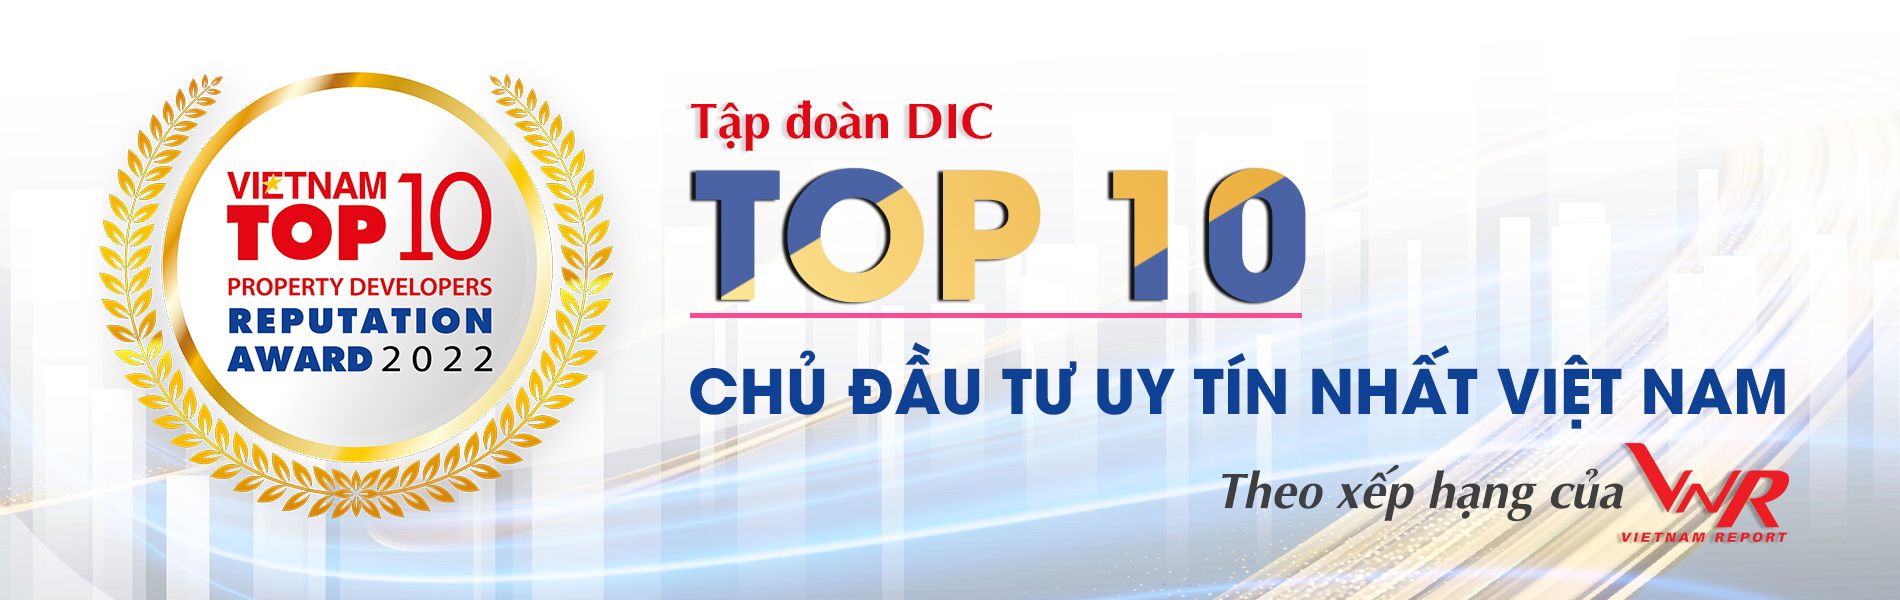 DIC Group là một trong những thương hiệu uy tín hàng đầu thị trường Việt